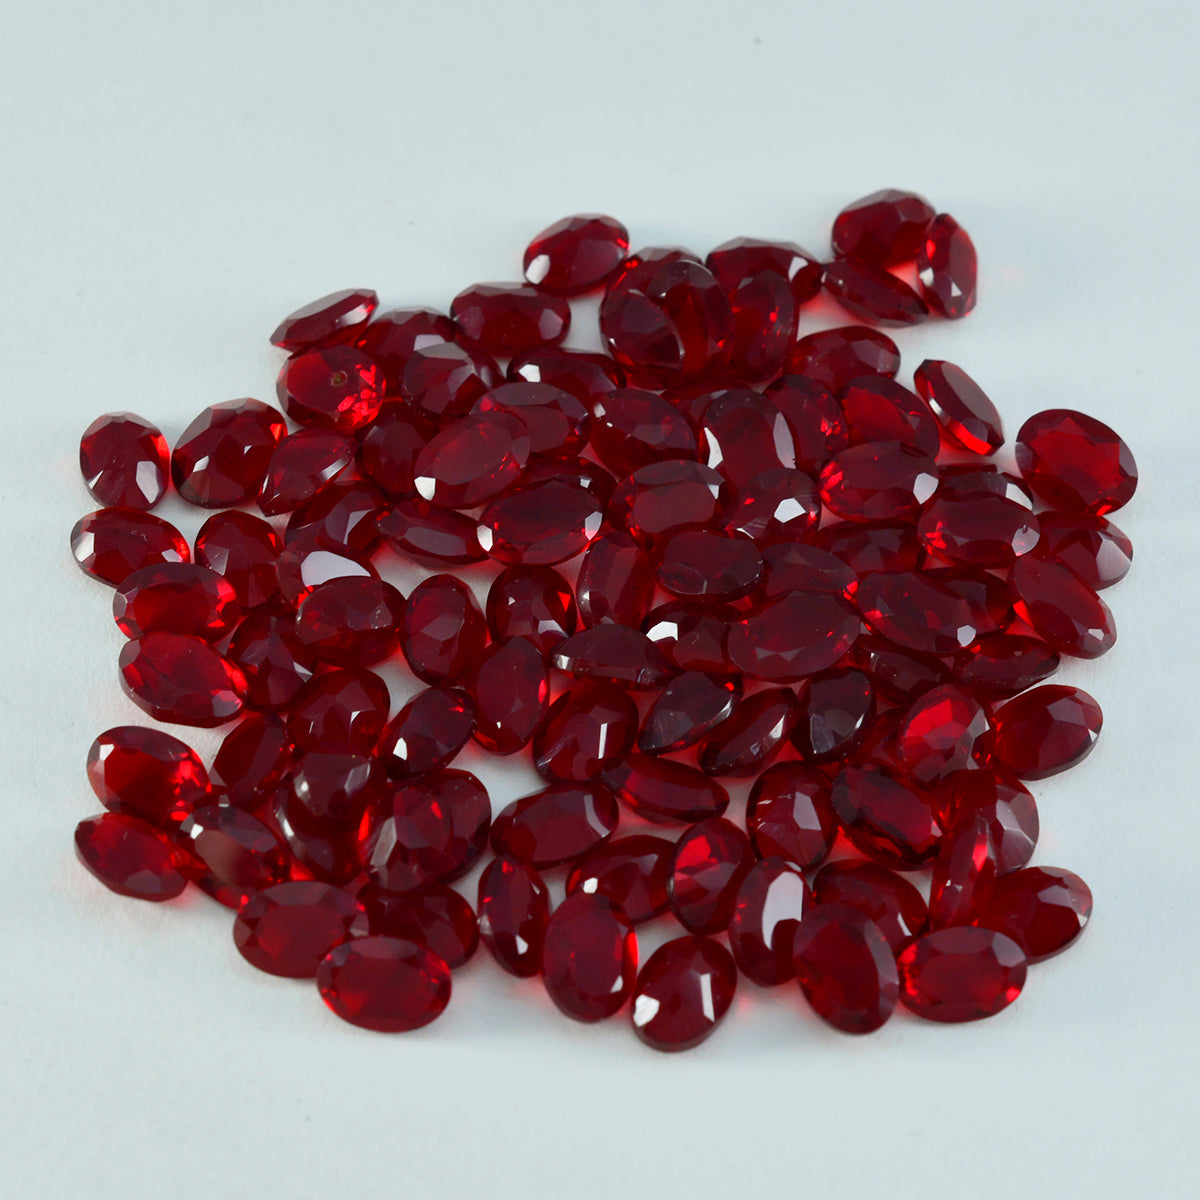 Riyogems 1 Stück roter Rubin mit CZ, facettiert, 5 x 7 mm, ovale Form, hübscher Qualitäts-Edelstein